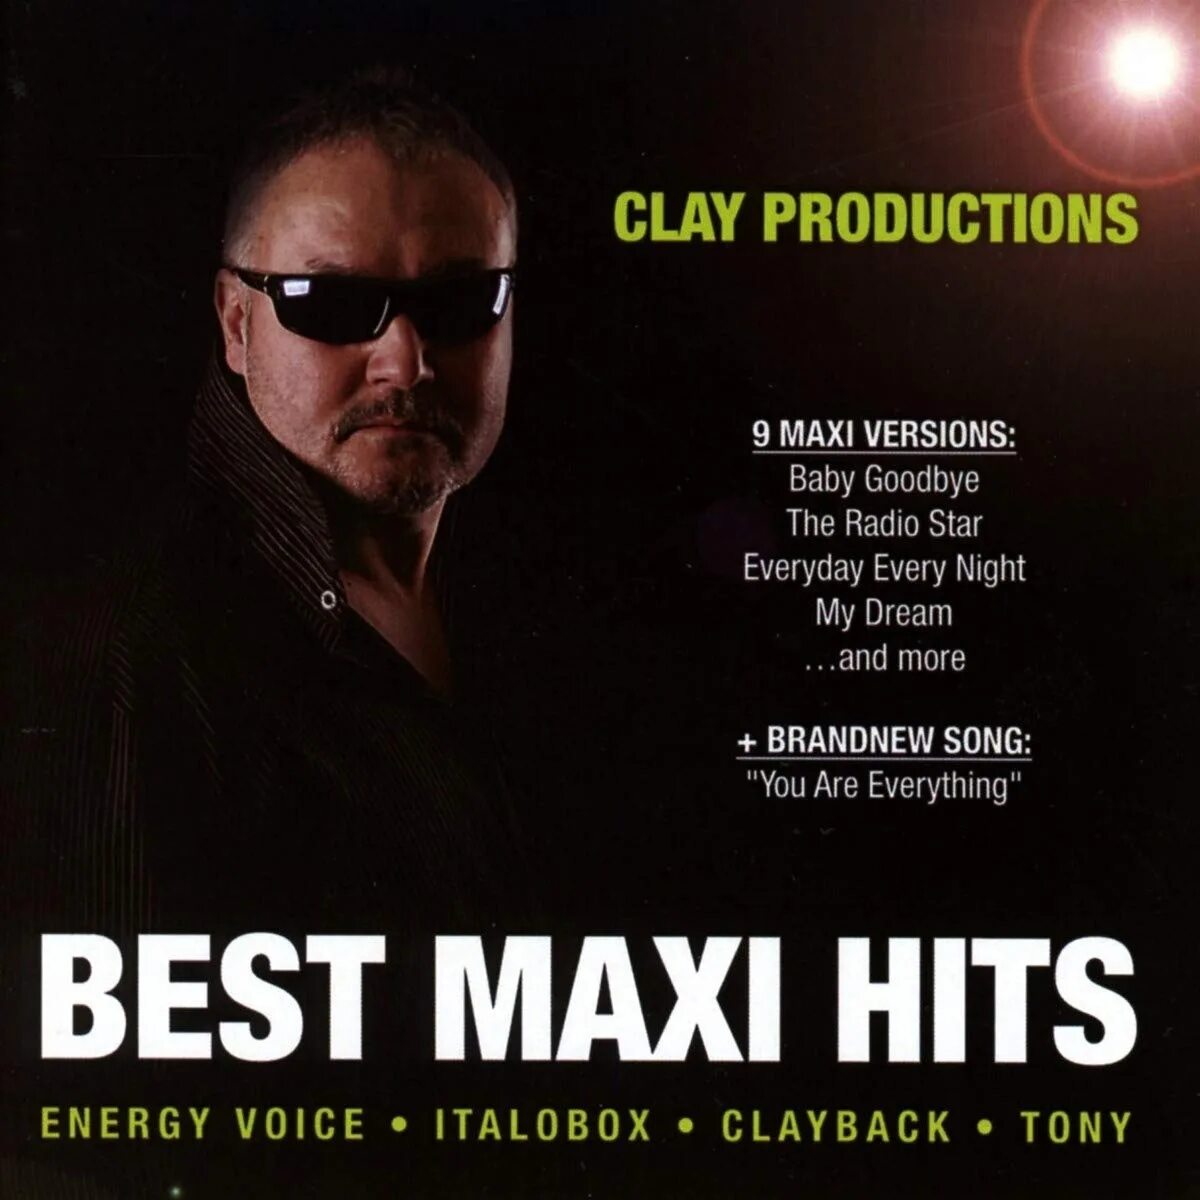 Italo Maxi Hits. Italo Maxi Hits 85. Italobox-every Day every Night(Extended Mix Version). Italobox - Love Song. Maxi hits